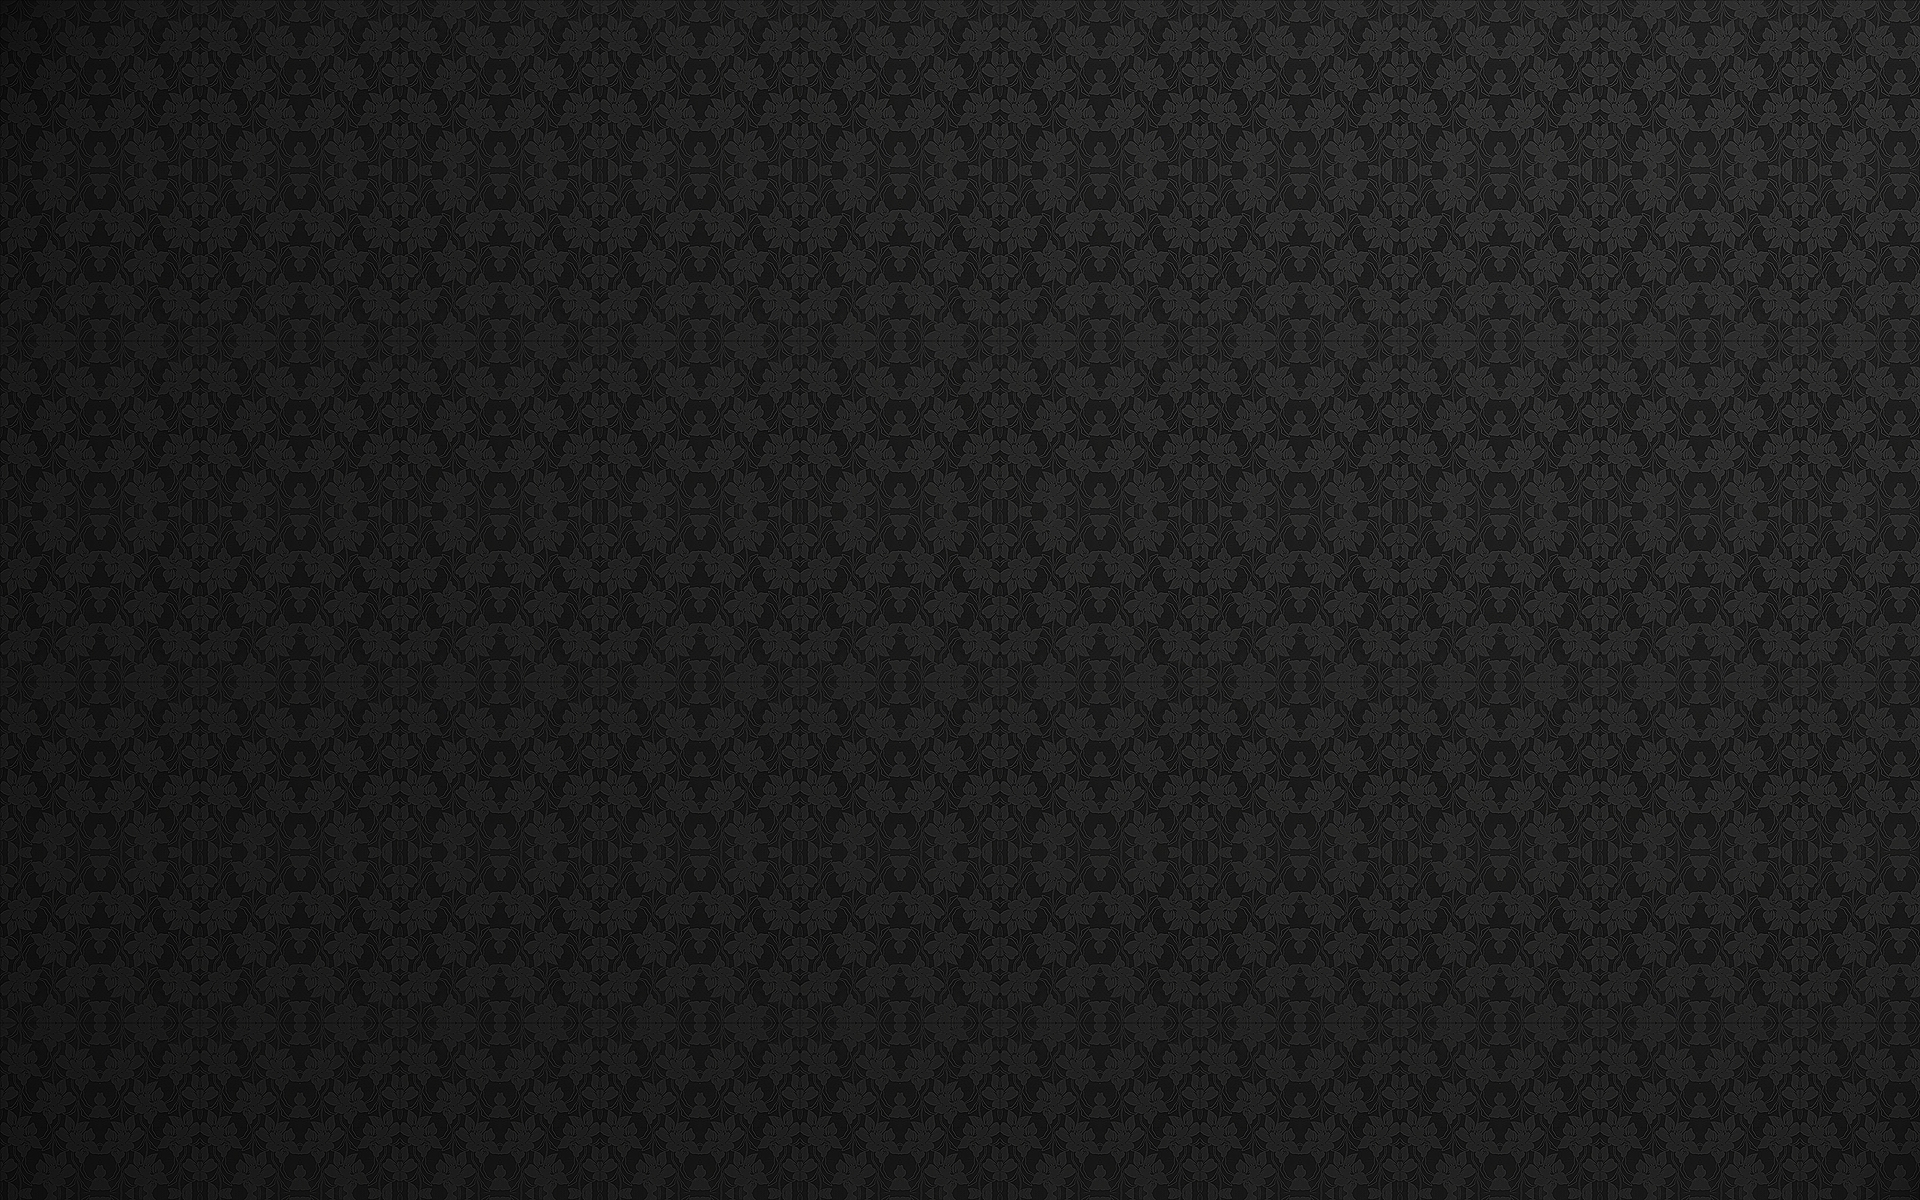 [45+] Fancy Black Wallpaper | WallpaperSafari.com